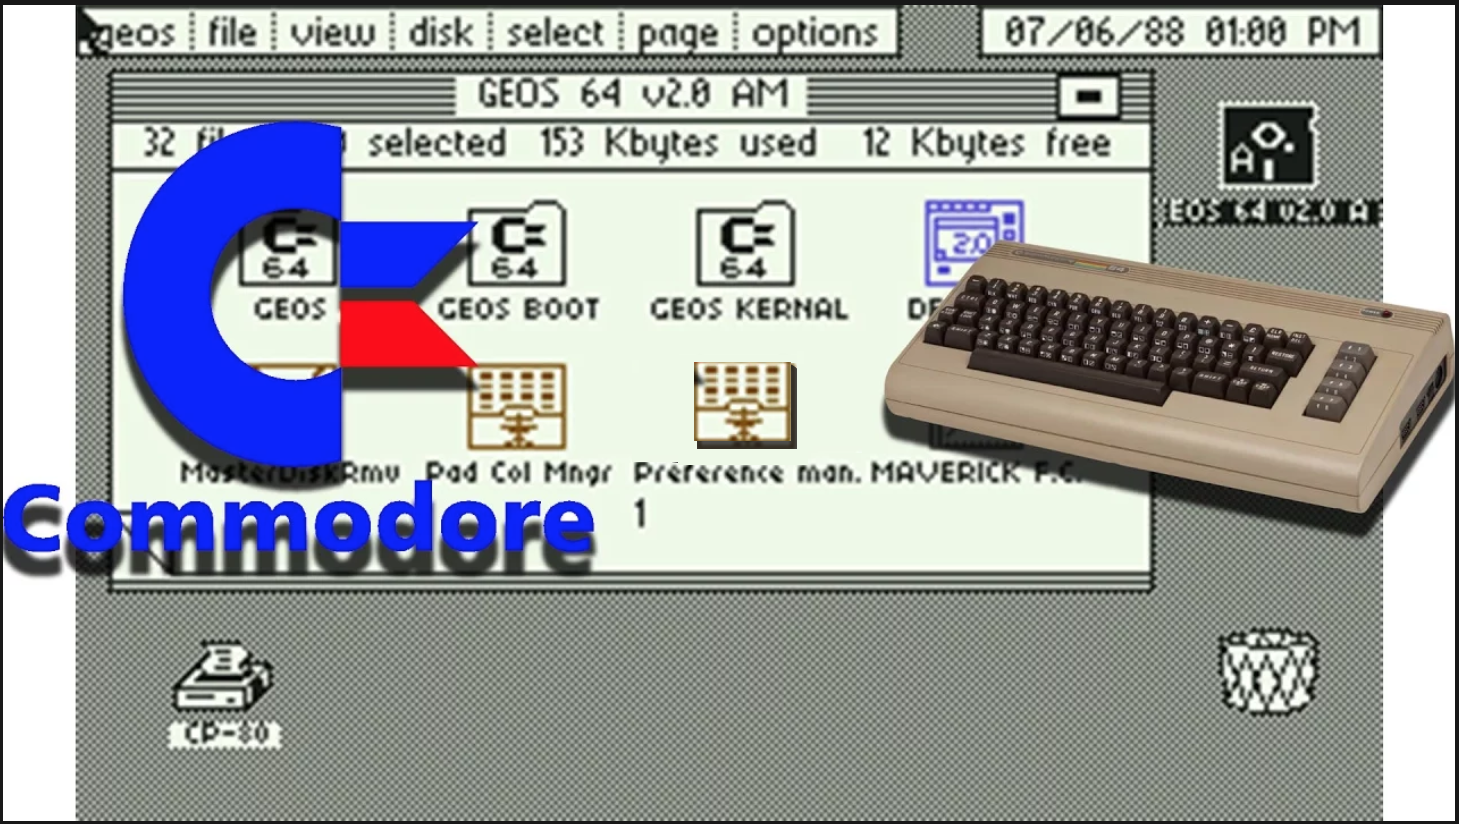 16 GB Microsd Card Deluxe Commodore 64 GEOS Hard Drive for Raspberry Pi 2-3